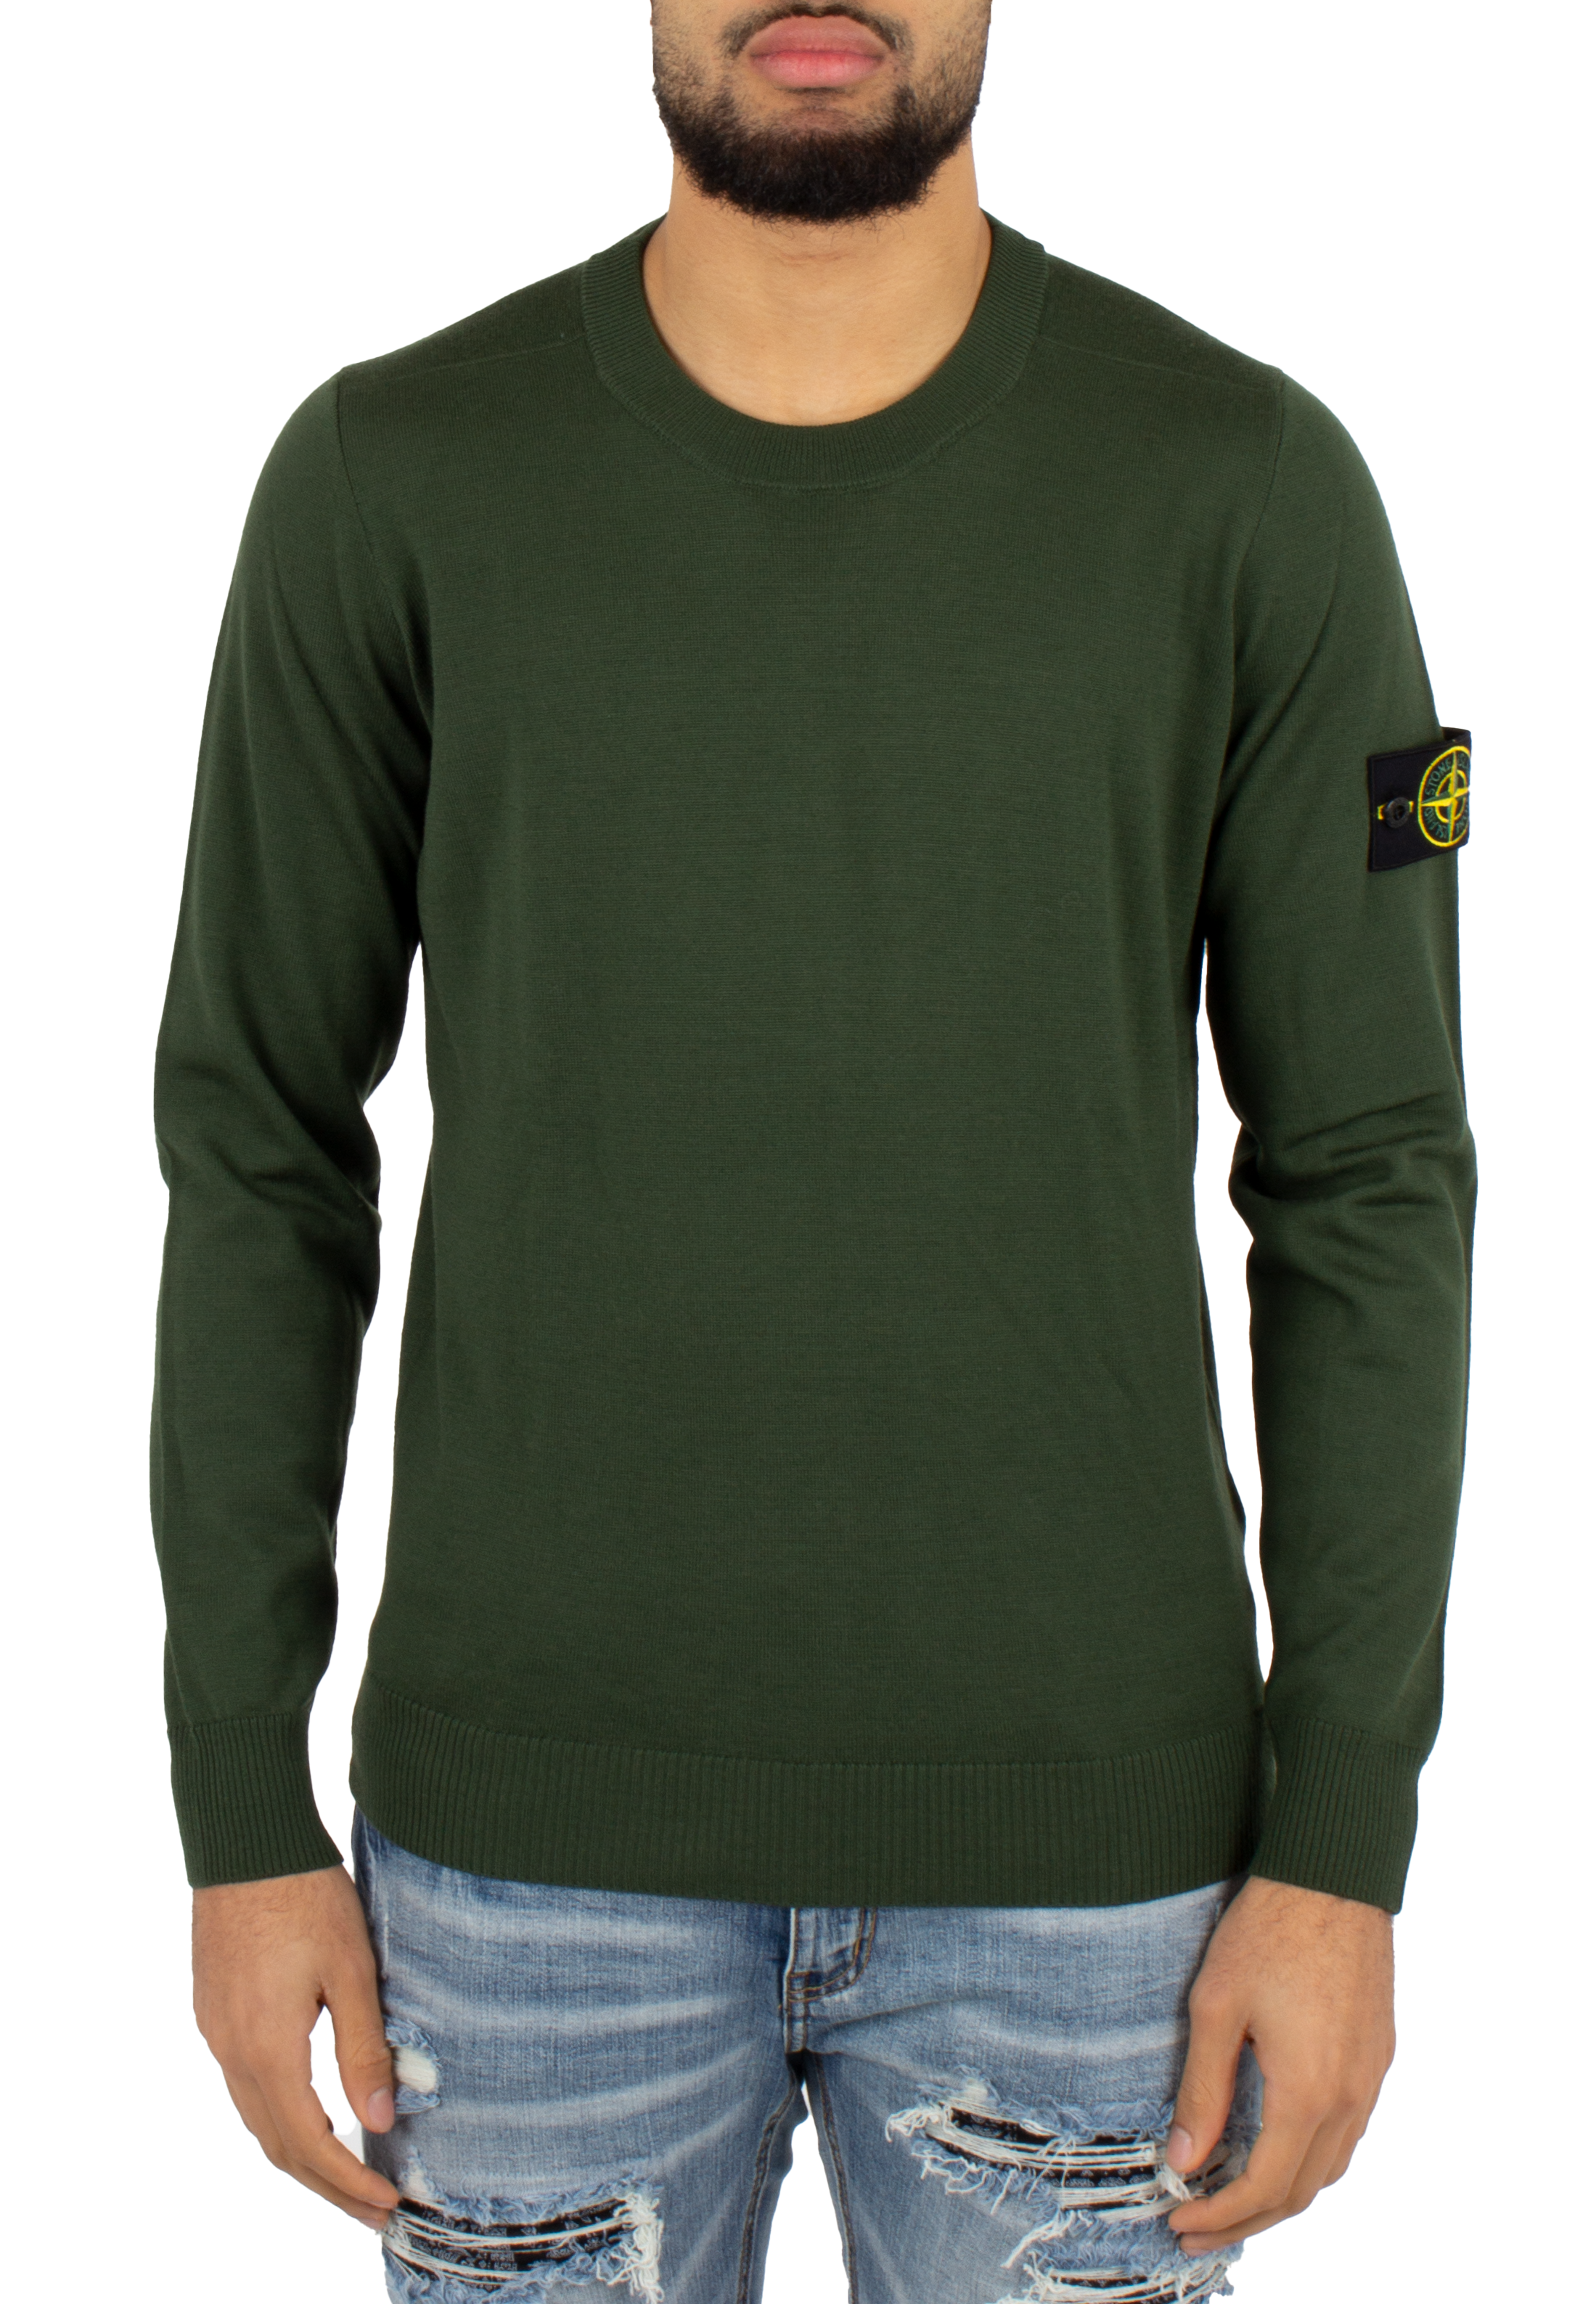 Stone Island sweater green